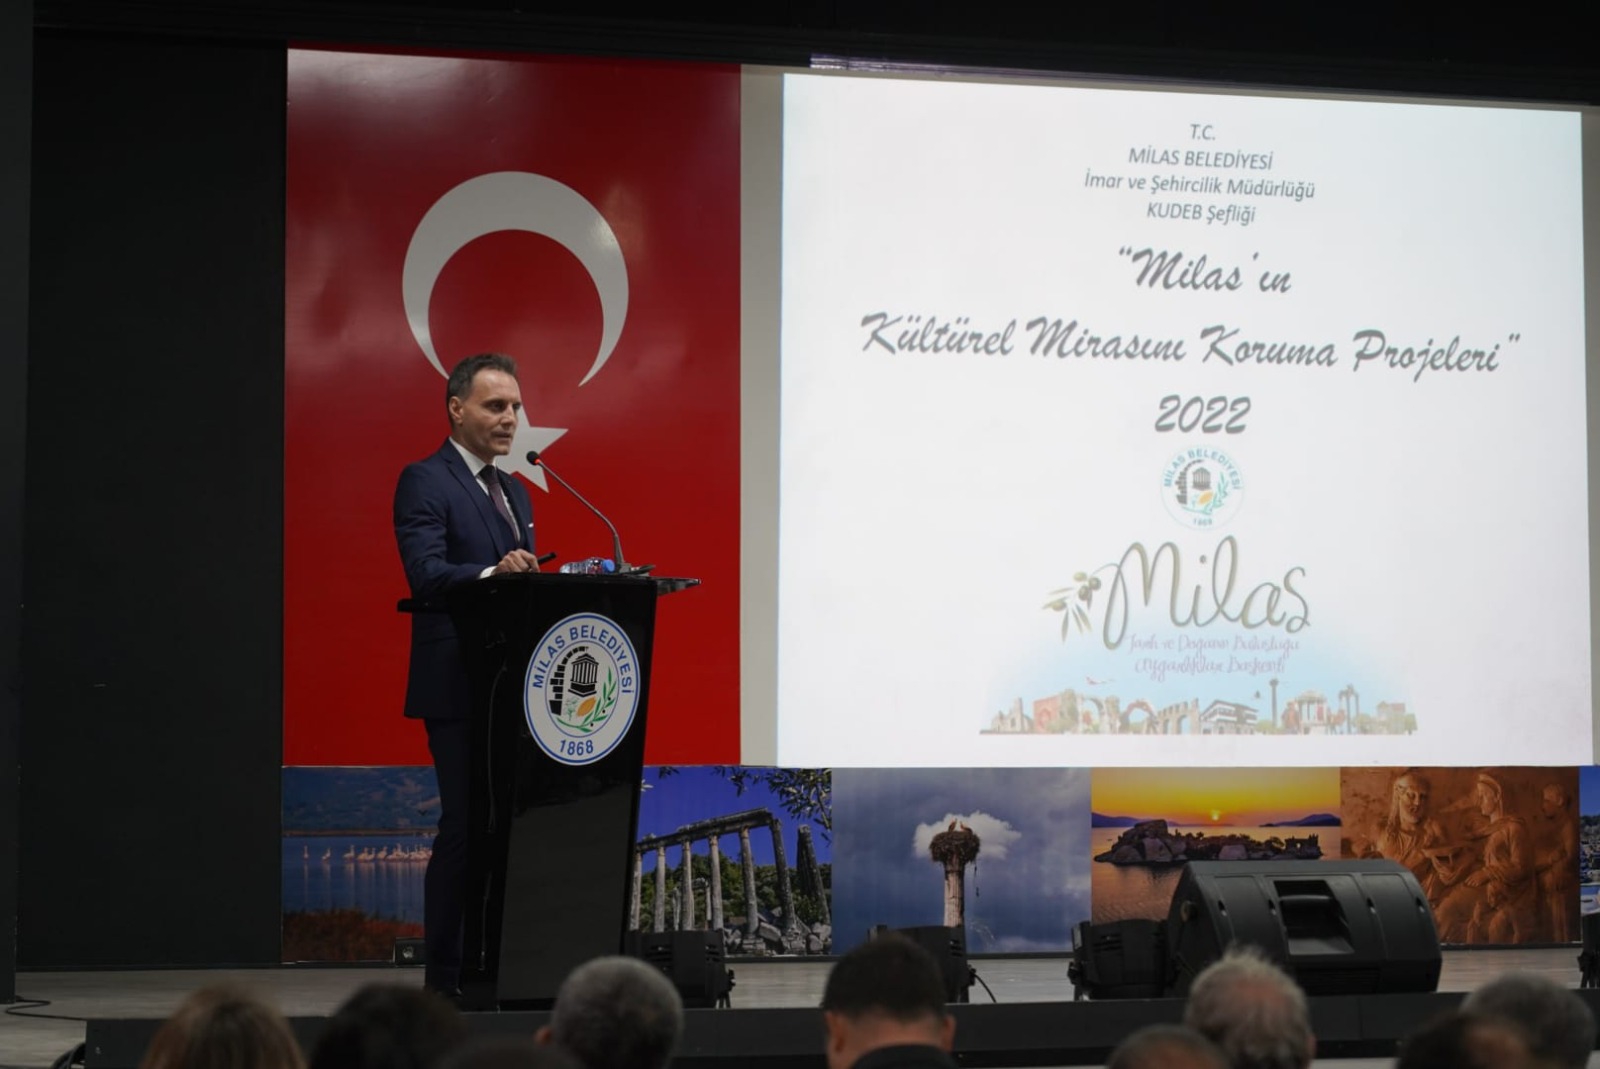 Milas'ın Kültürel Mirasını Koruma Projeleri Tanıtıldı